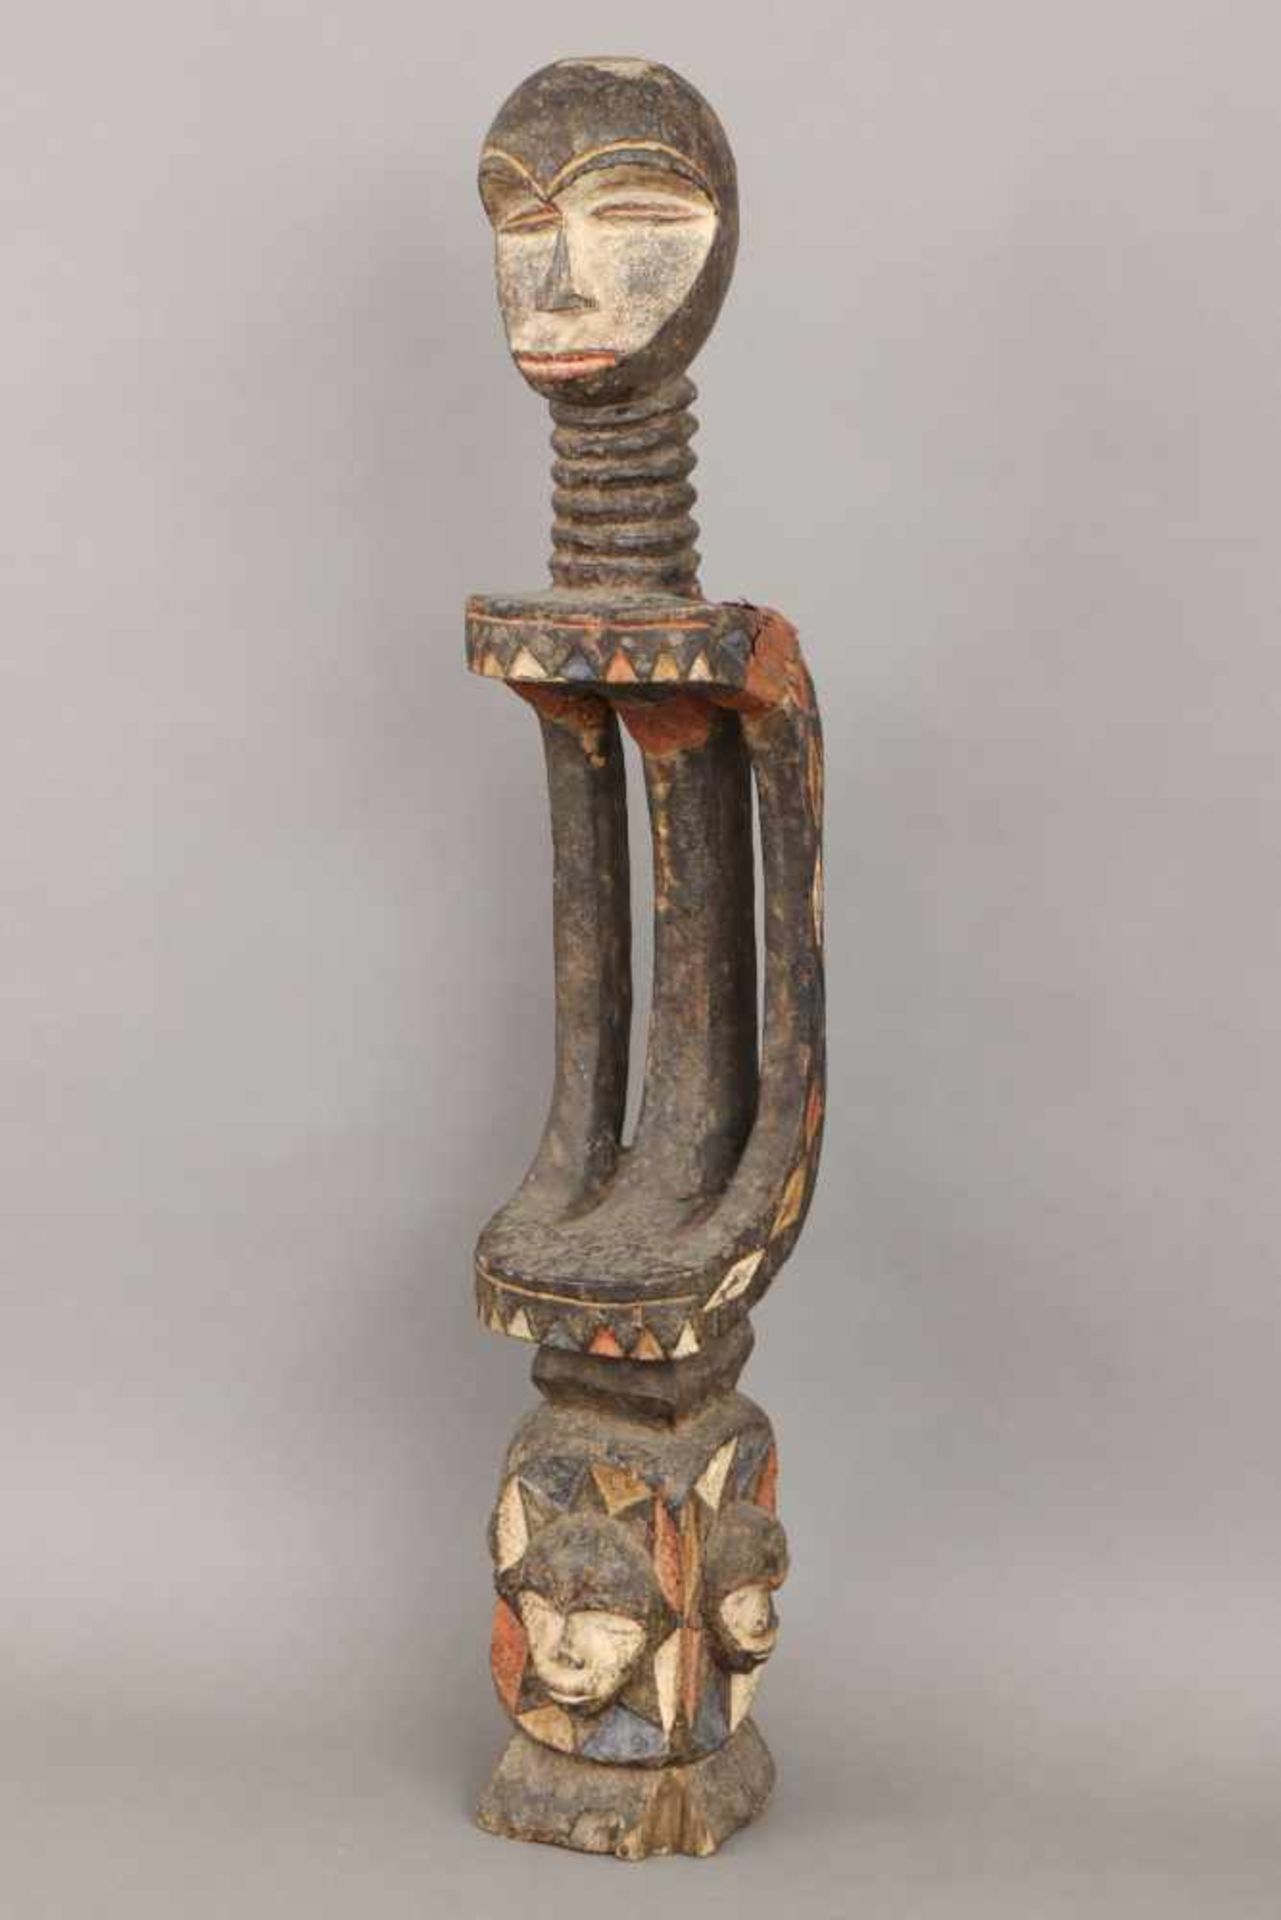 Afrikanische Ritual-/Ahnenfigur Holz, geschnitzt und geschwärzt, in Partien rot-weiß (Kaolin)